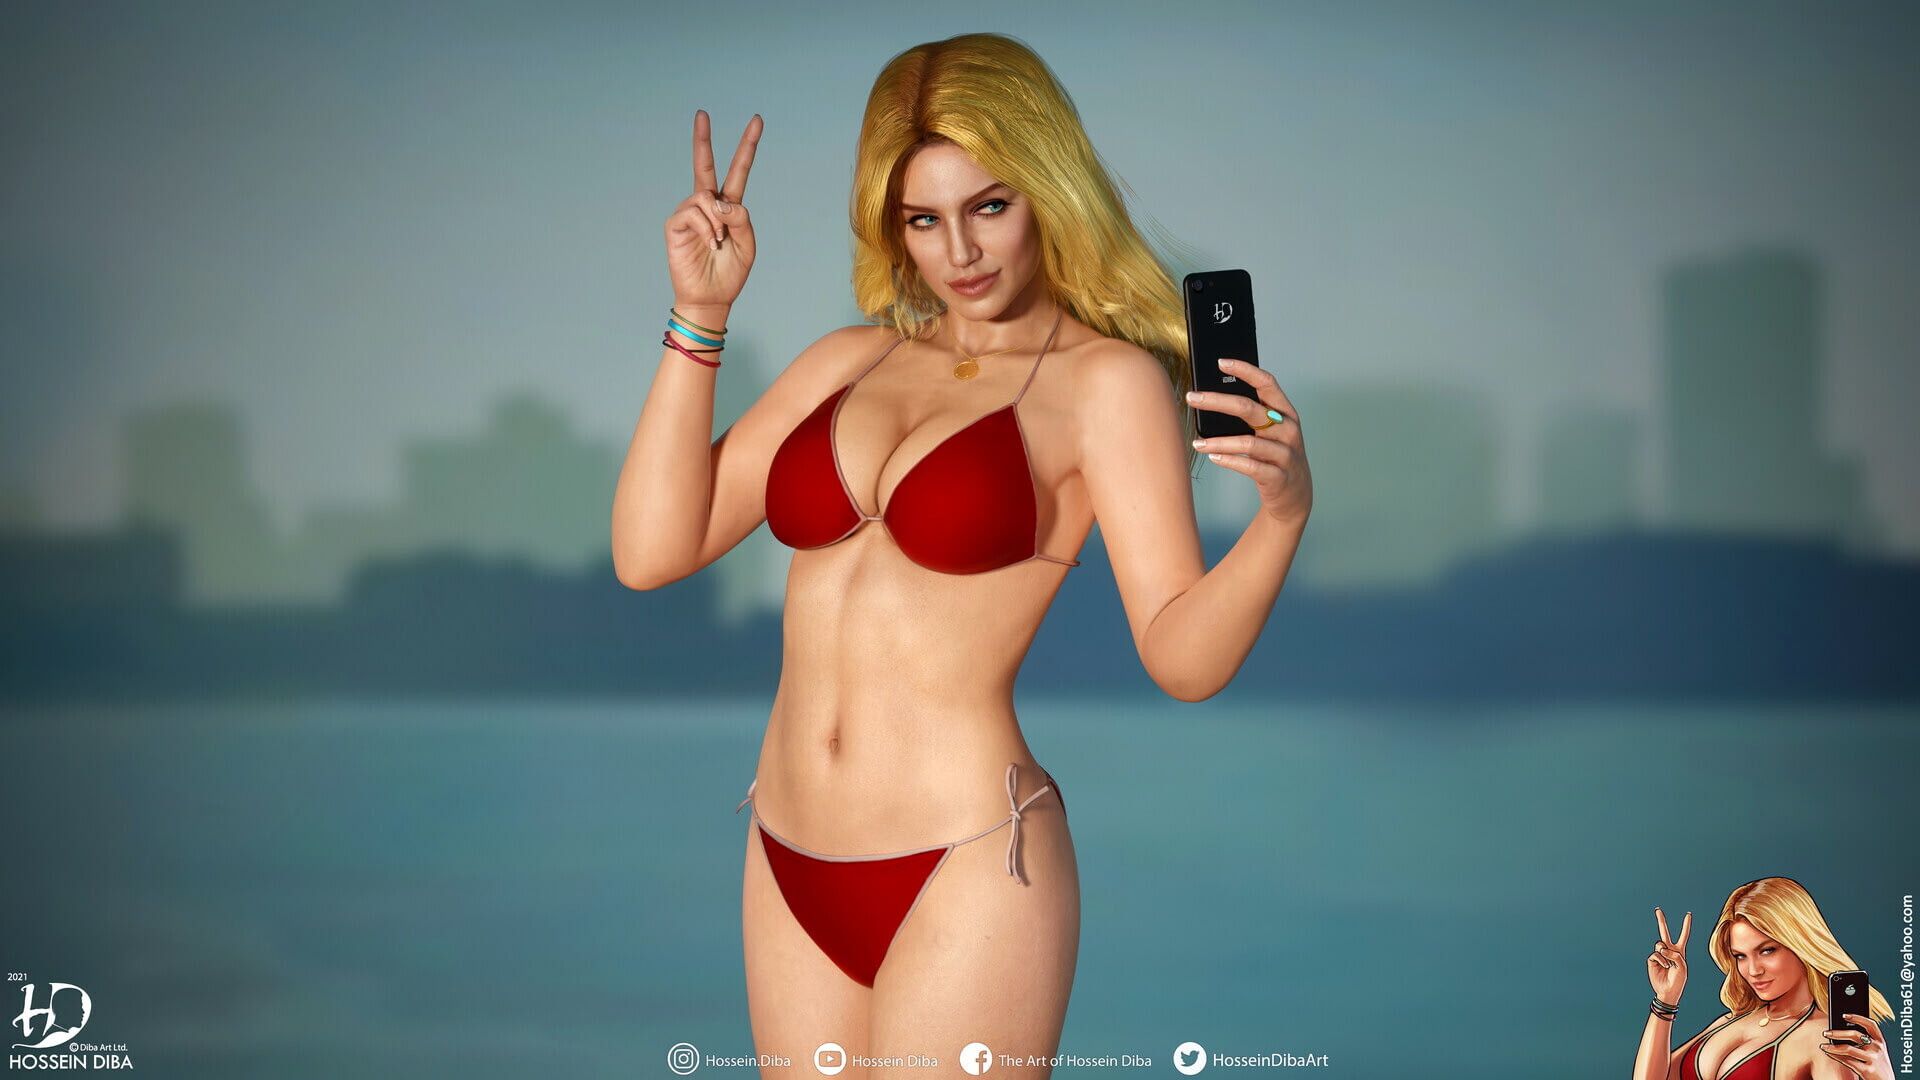 3D-модель девушки с обложки GTA V. Художник: Хоссейн Диба.